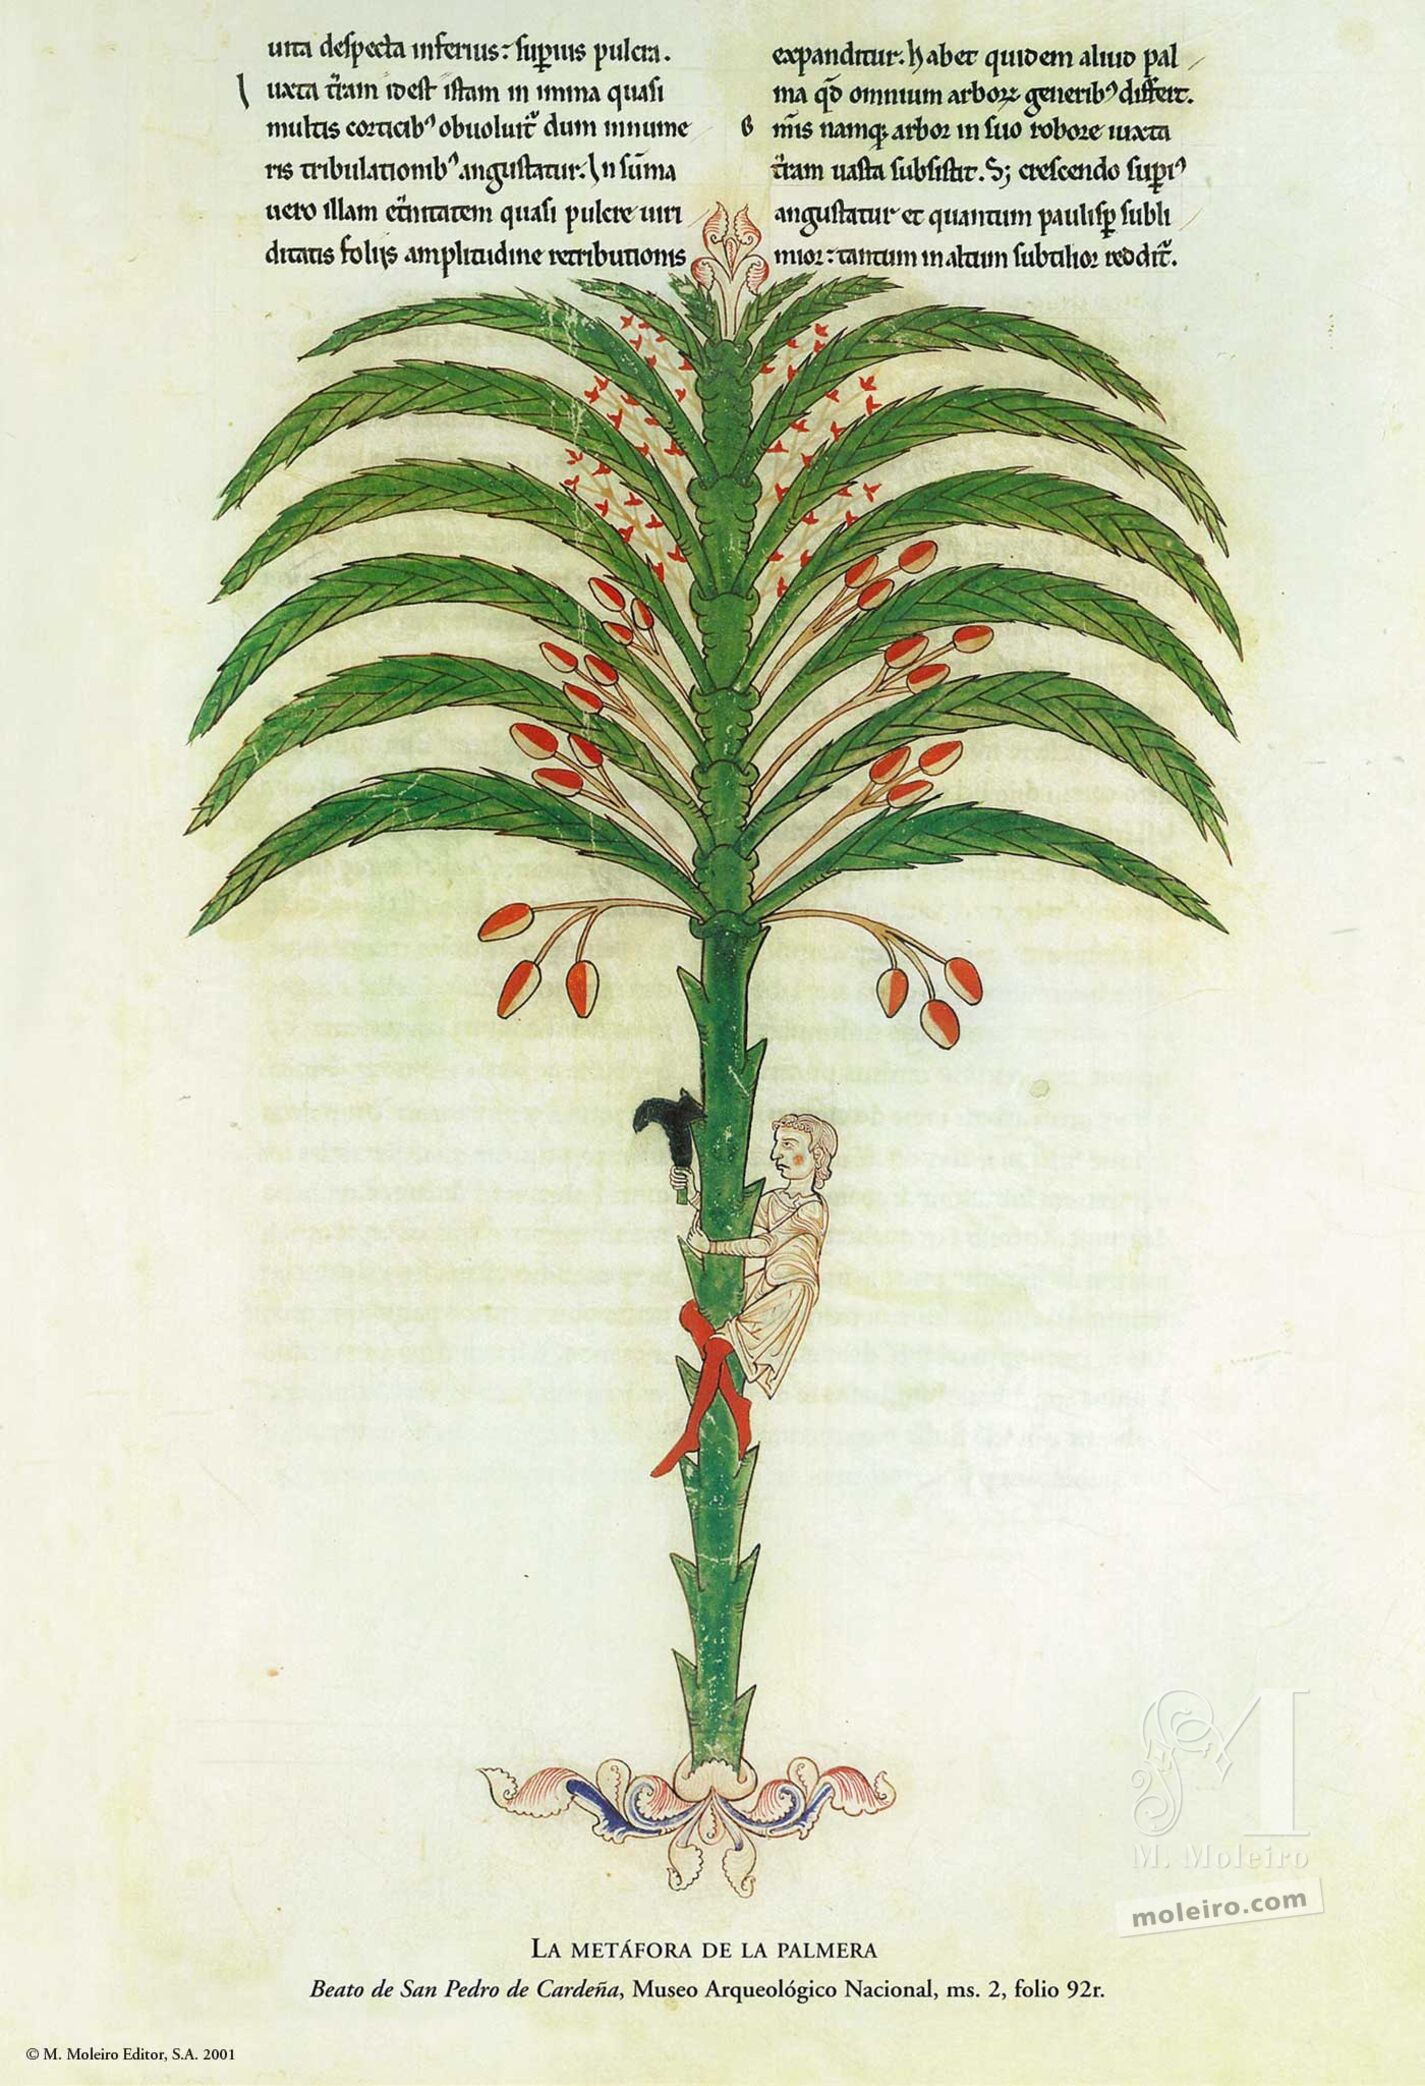 La metáfora de la palmera (folio 92), Beato de Liébana, códice de San Pedro de Cardeña